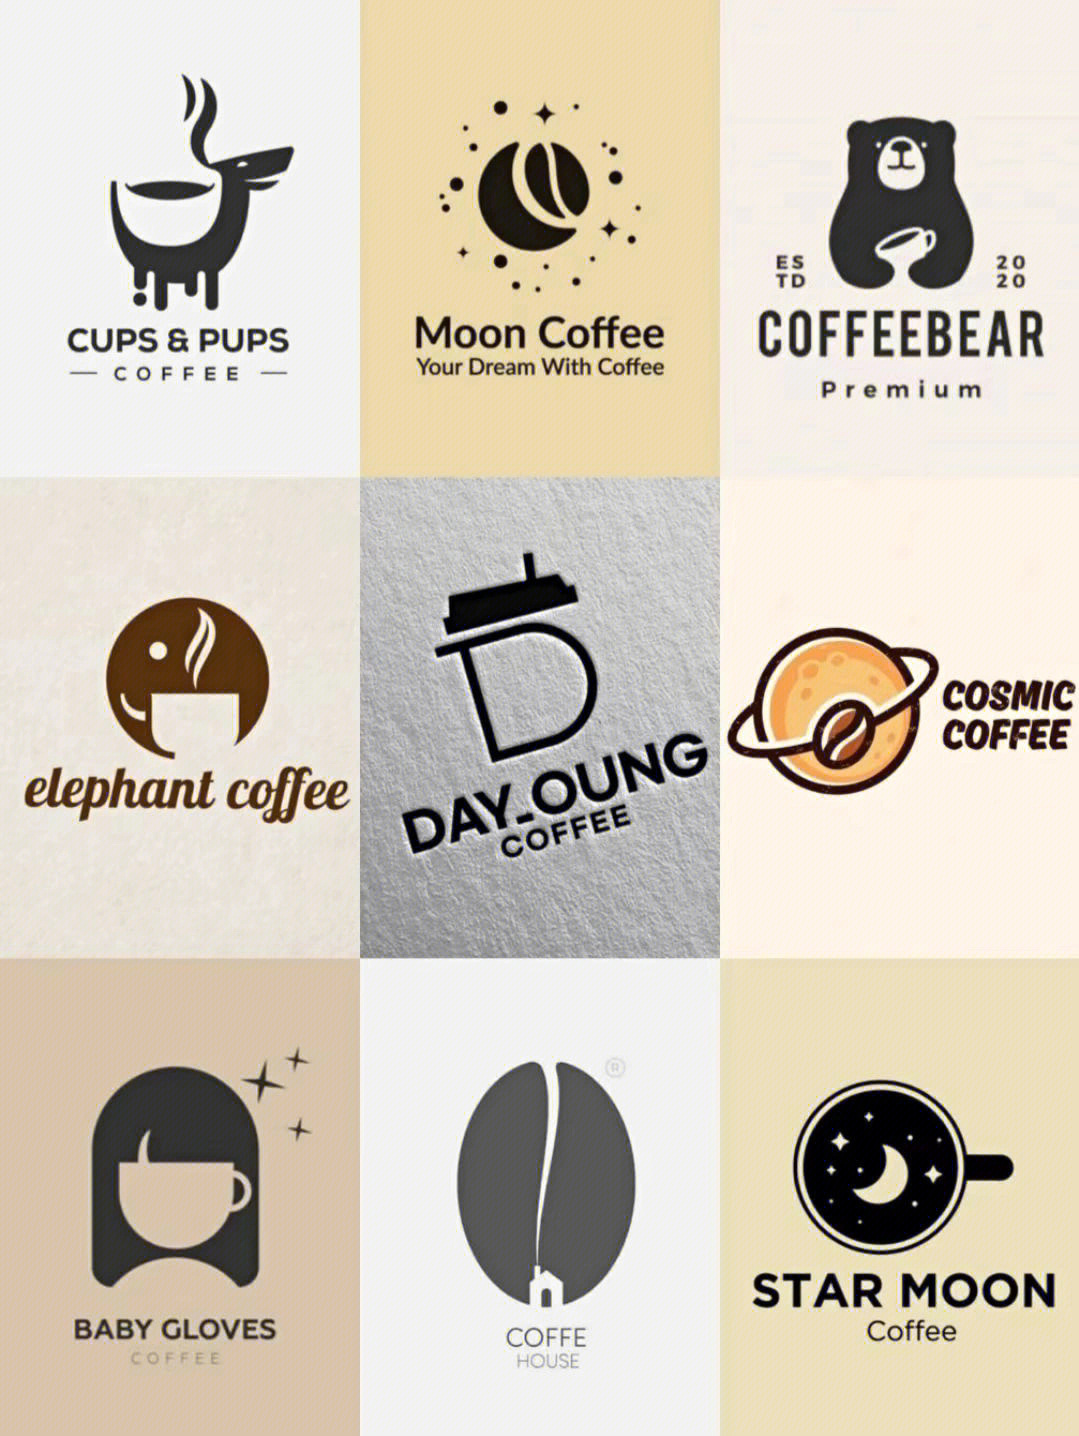 咖啡馆logo设计说明图片